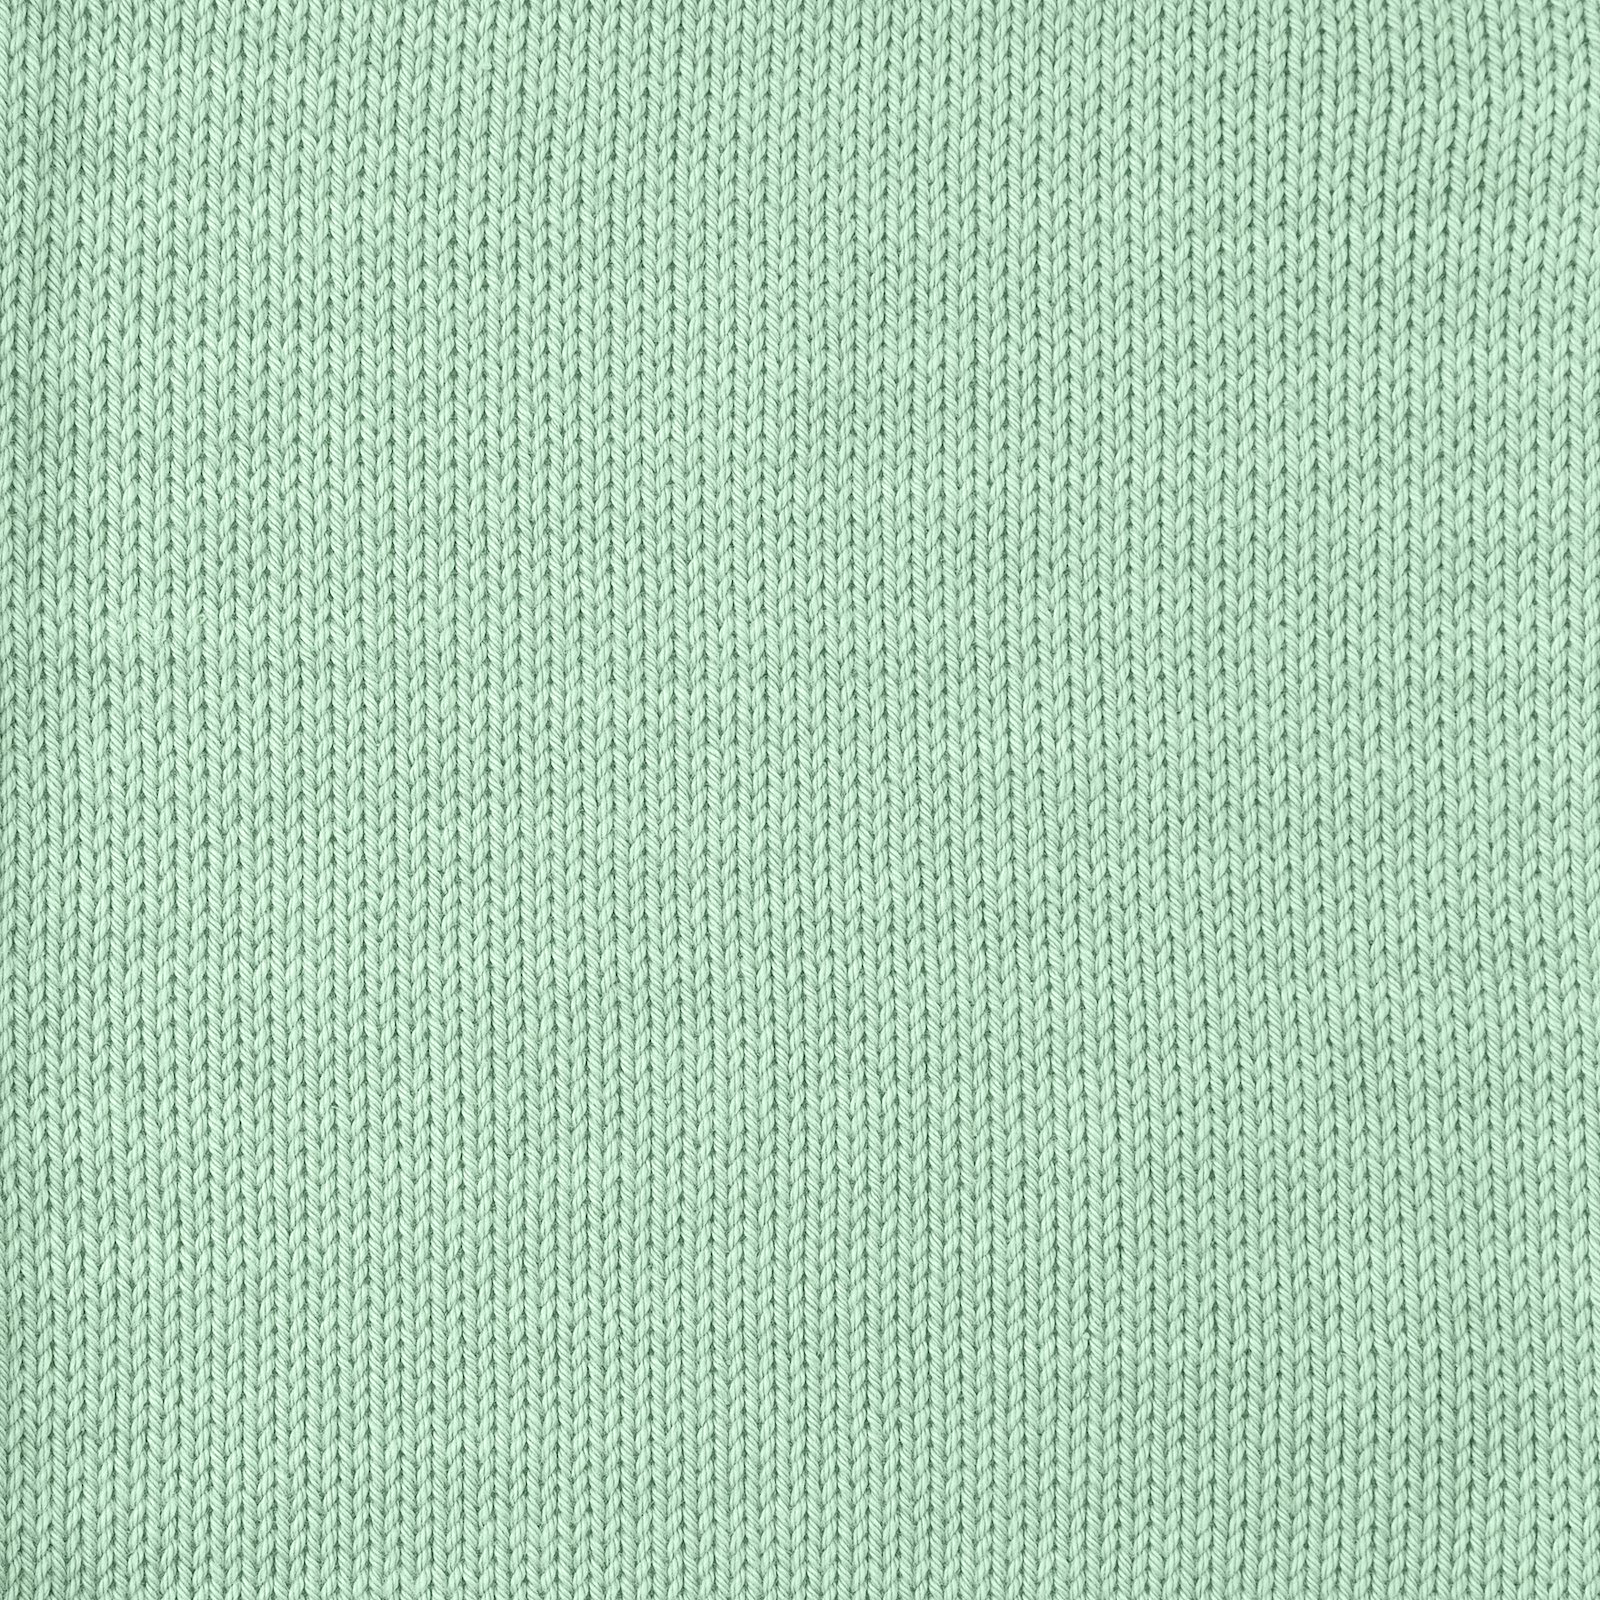 FRAYA, 100% cotton 8/4  yarn  "Colourful", mint 90060092_sskit